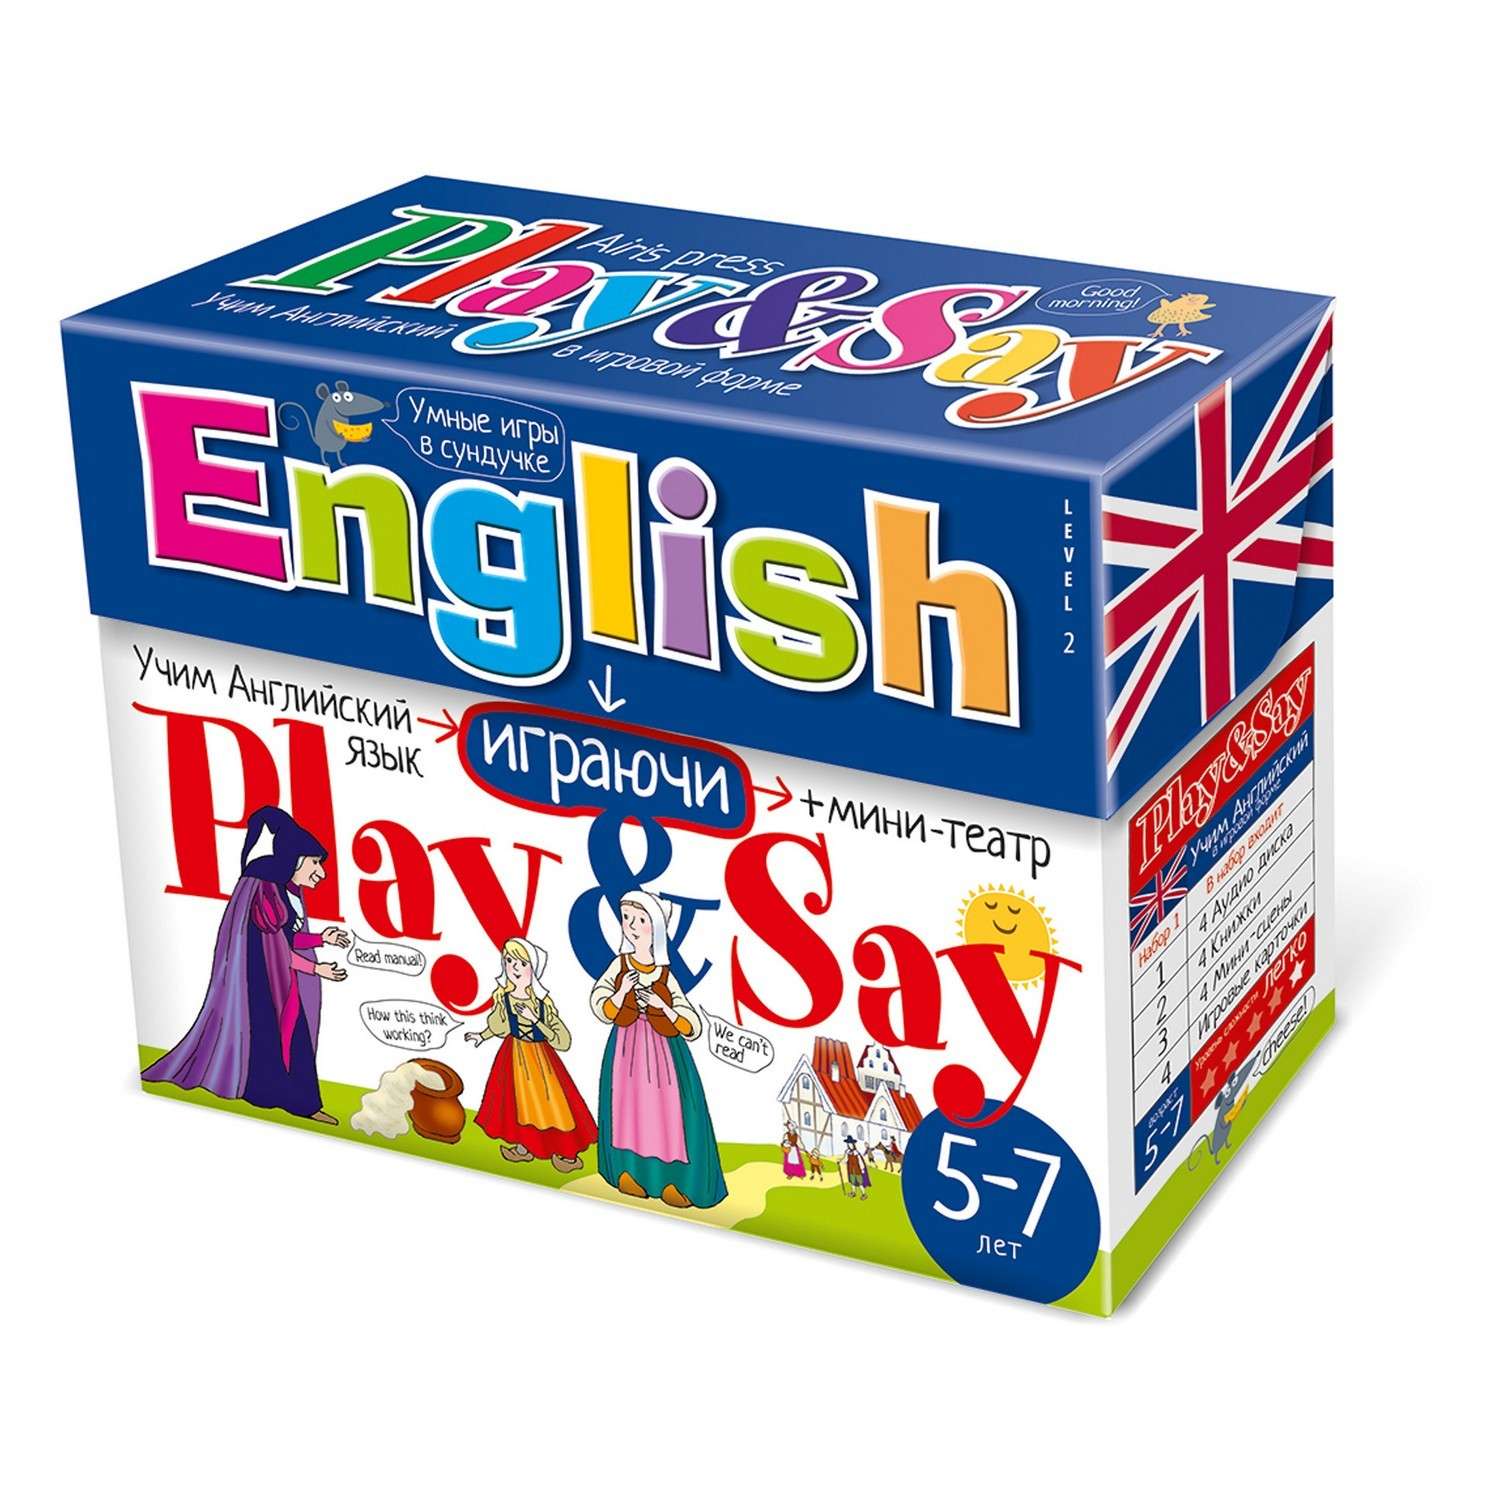 Игра изучаем английский. Игрушки для изучения английского языка для детей. Набор по английскому языку для малышей. Учим английский игра. Английский играючи для детей.